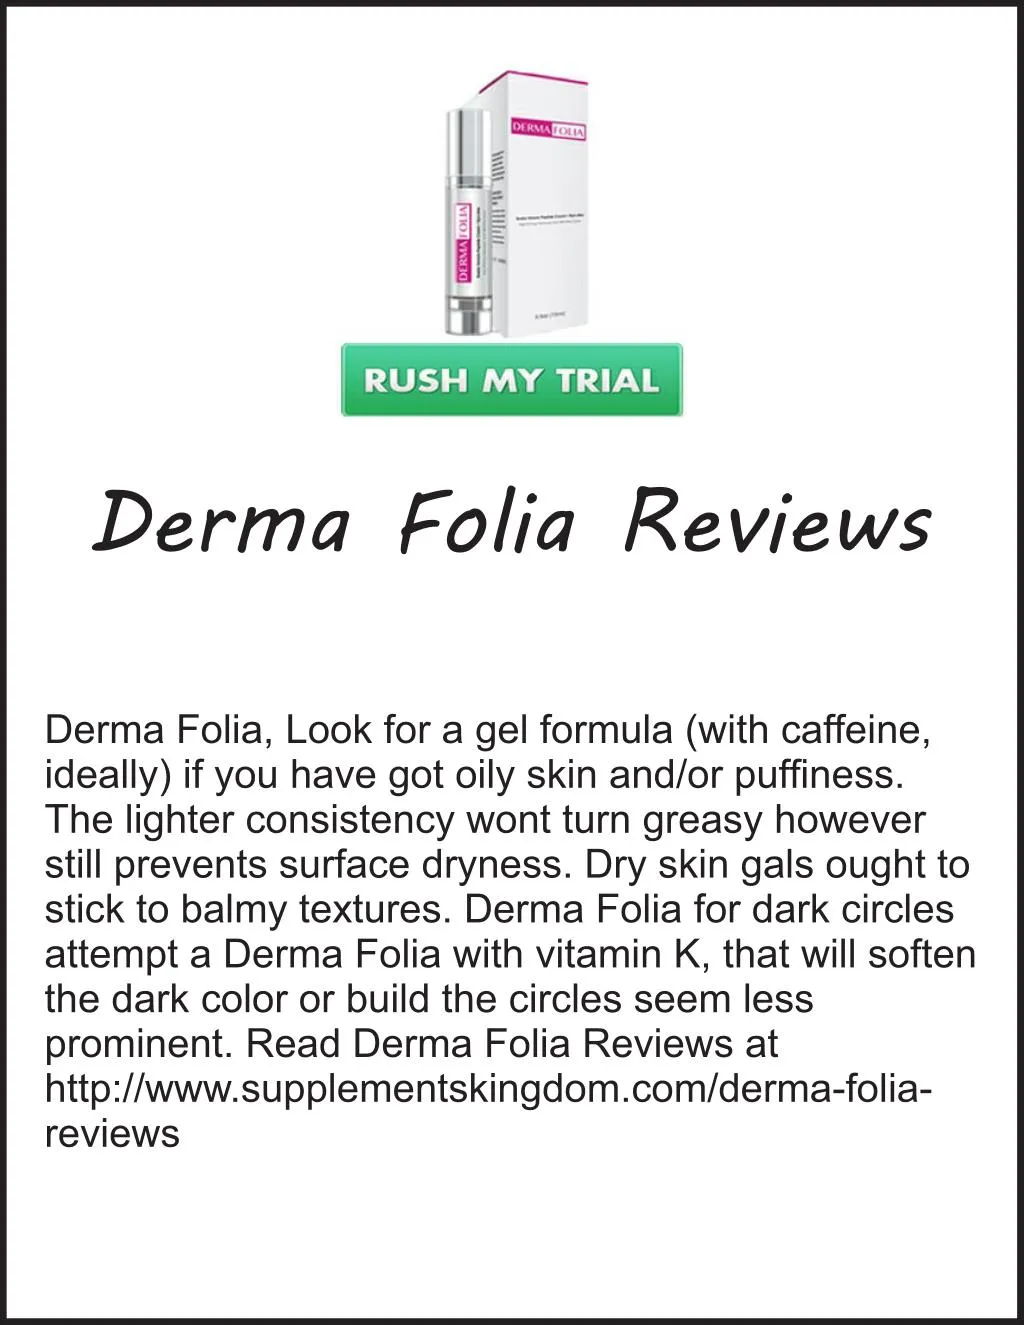 derma folia reviews